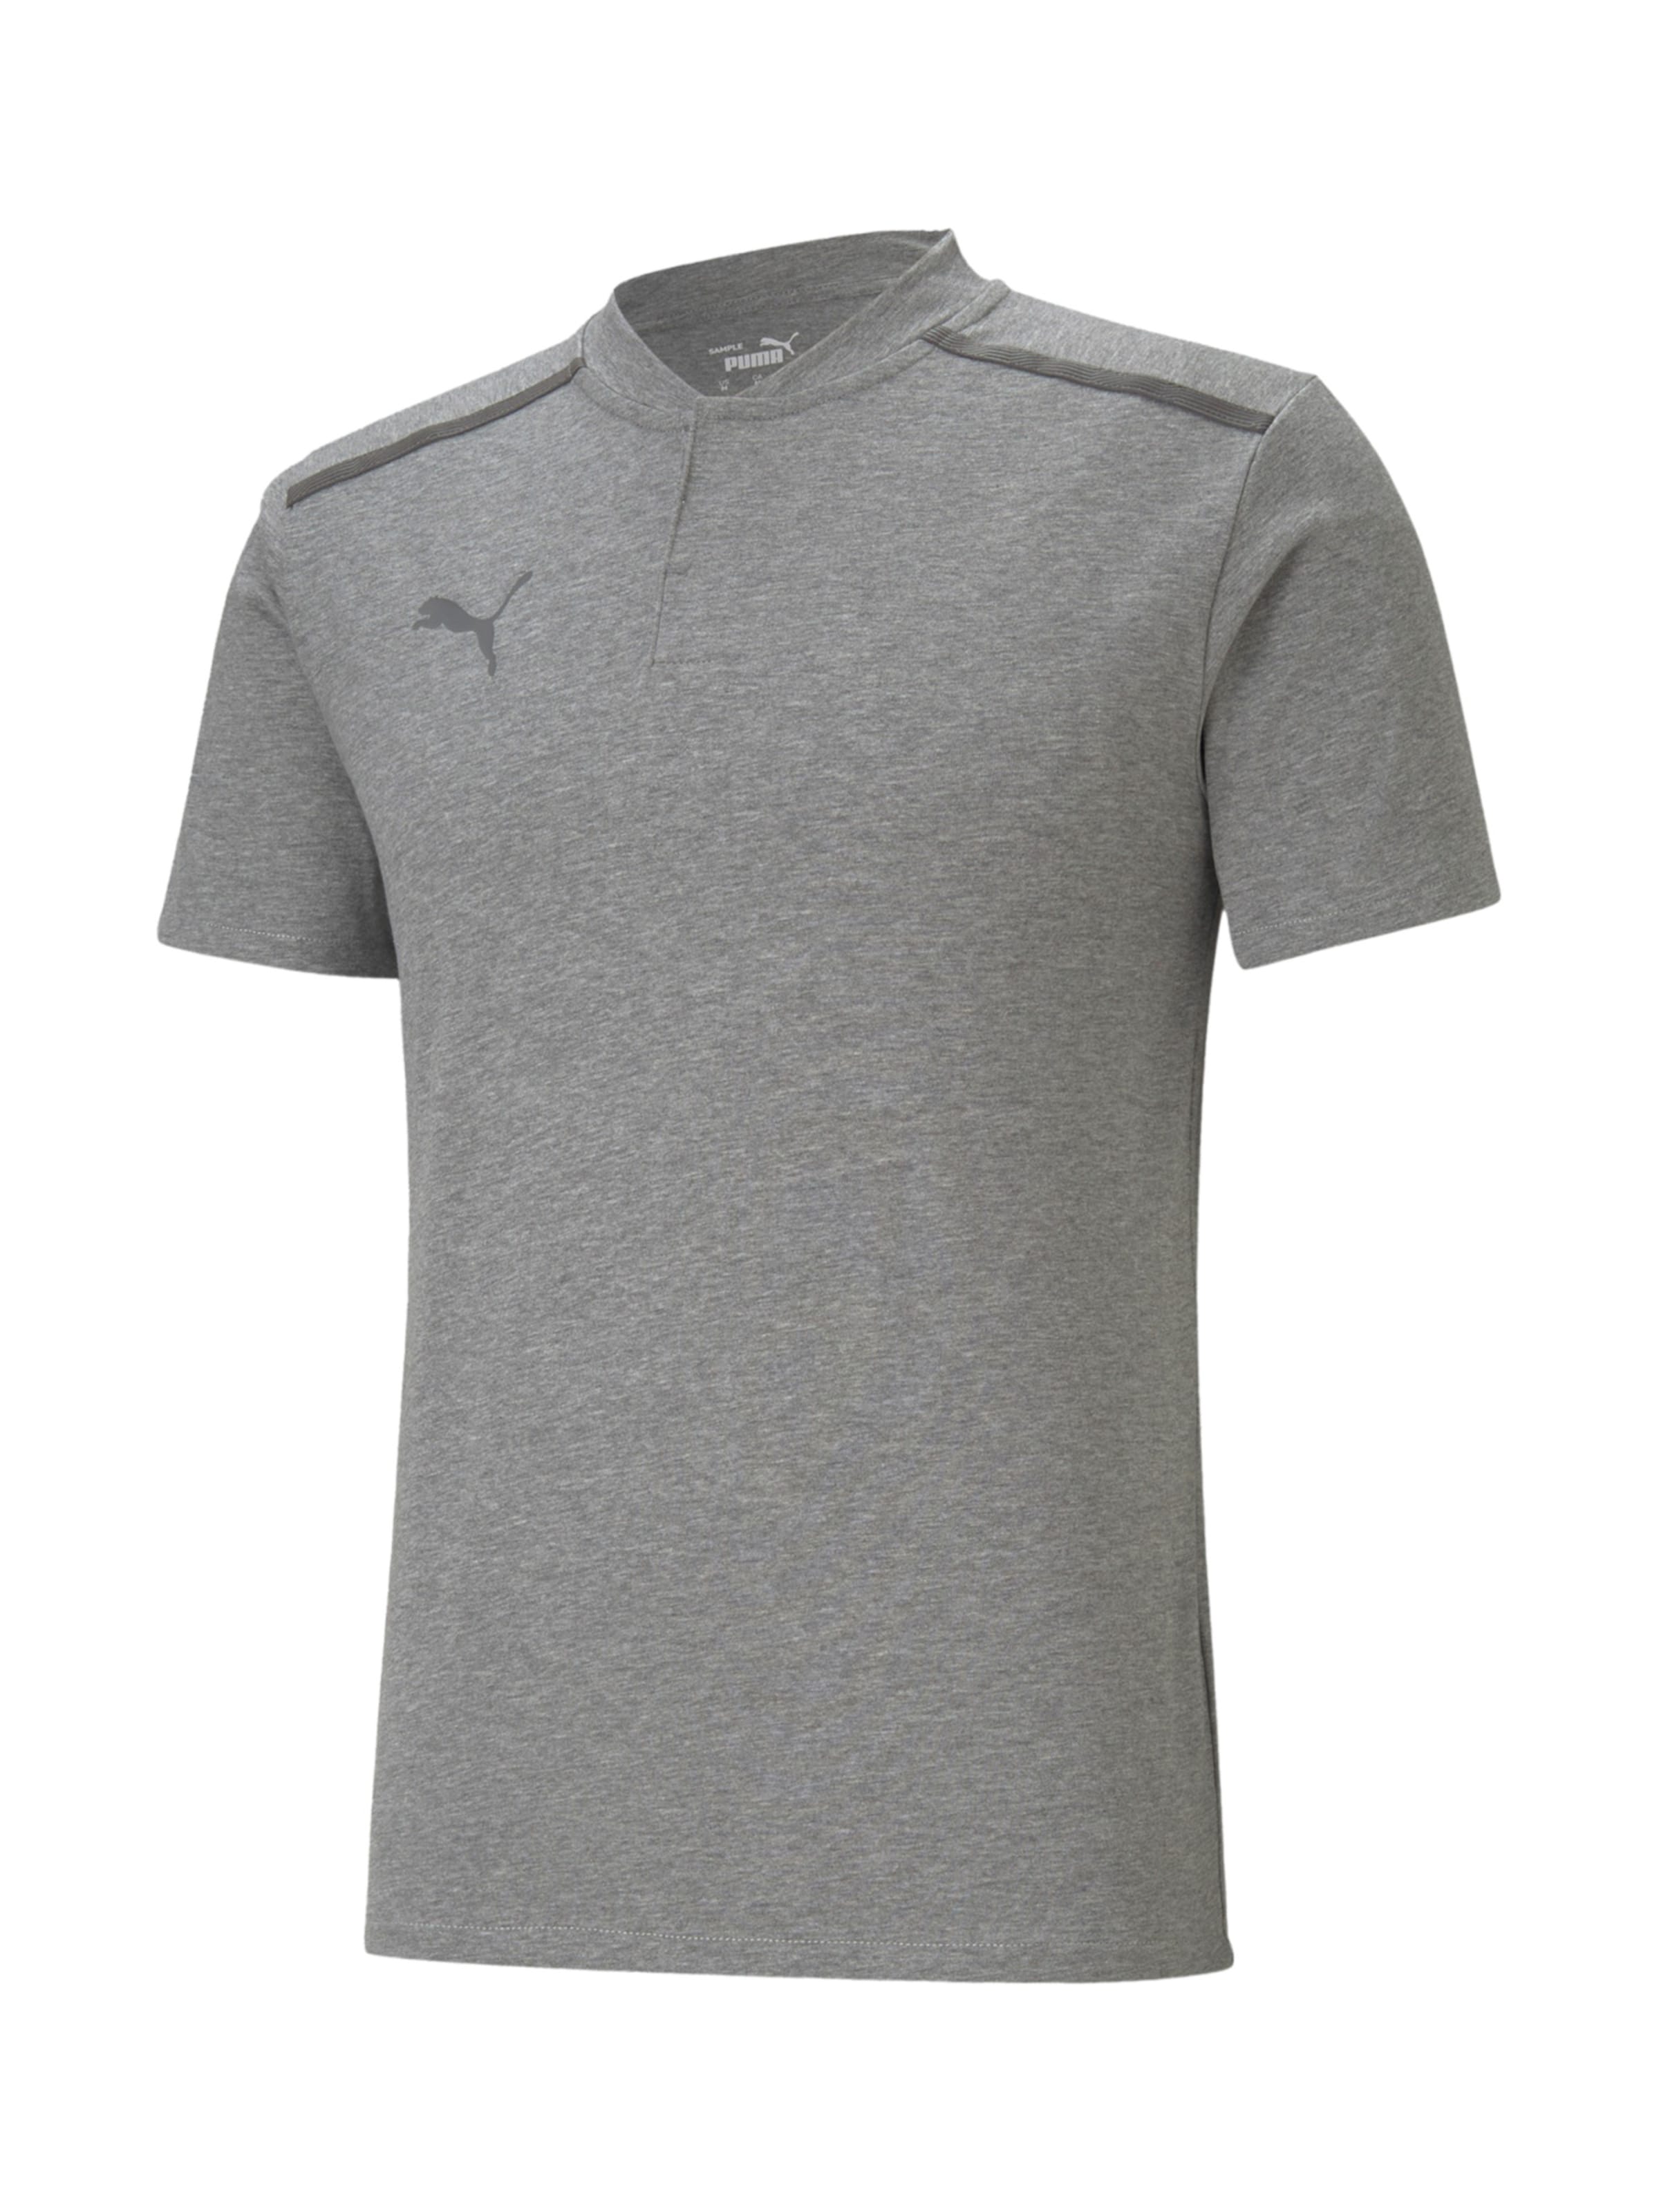 Männer Sportarten PUMA Shirt in Grau, Graumeliert - DZ60277